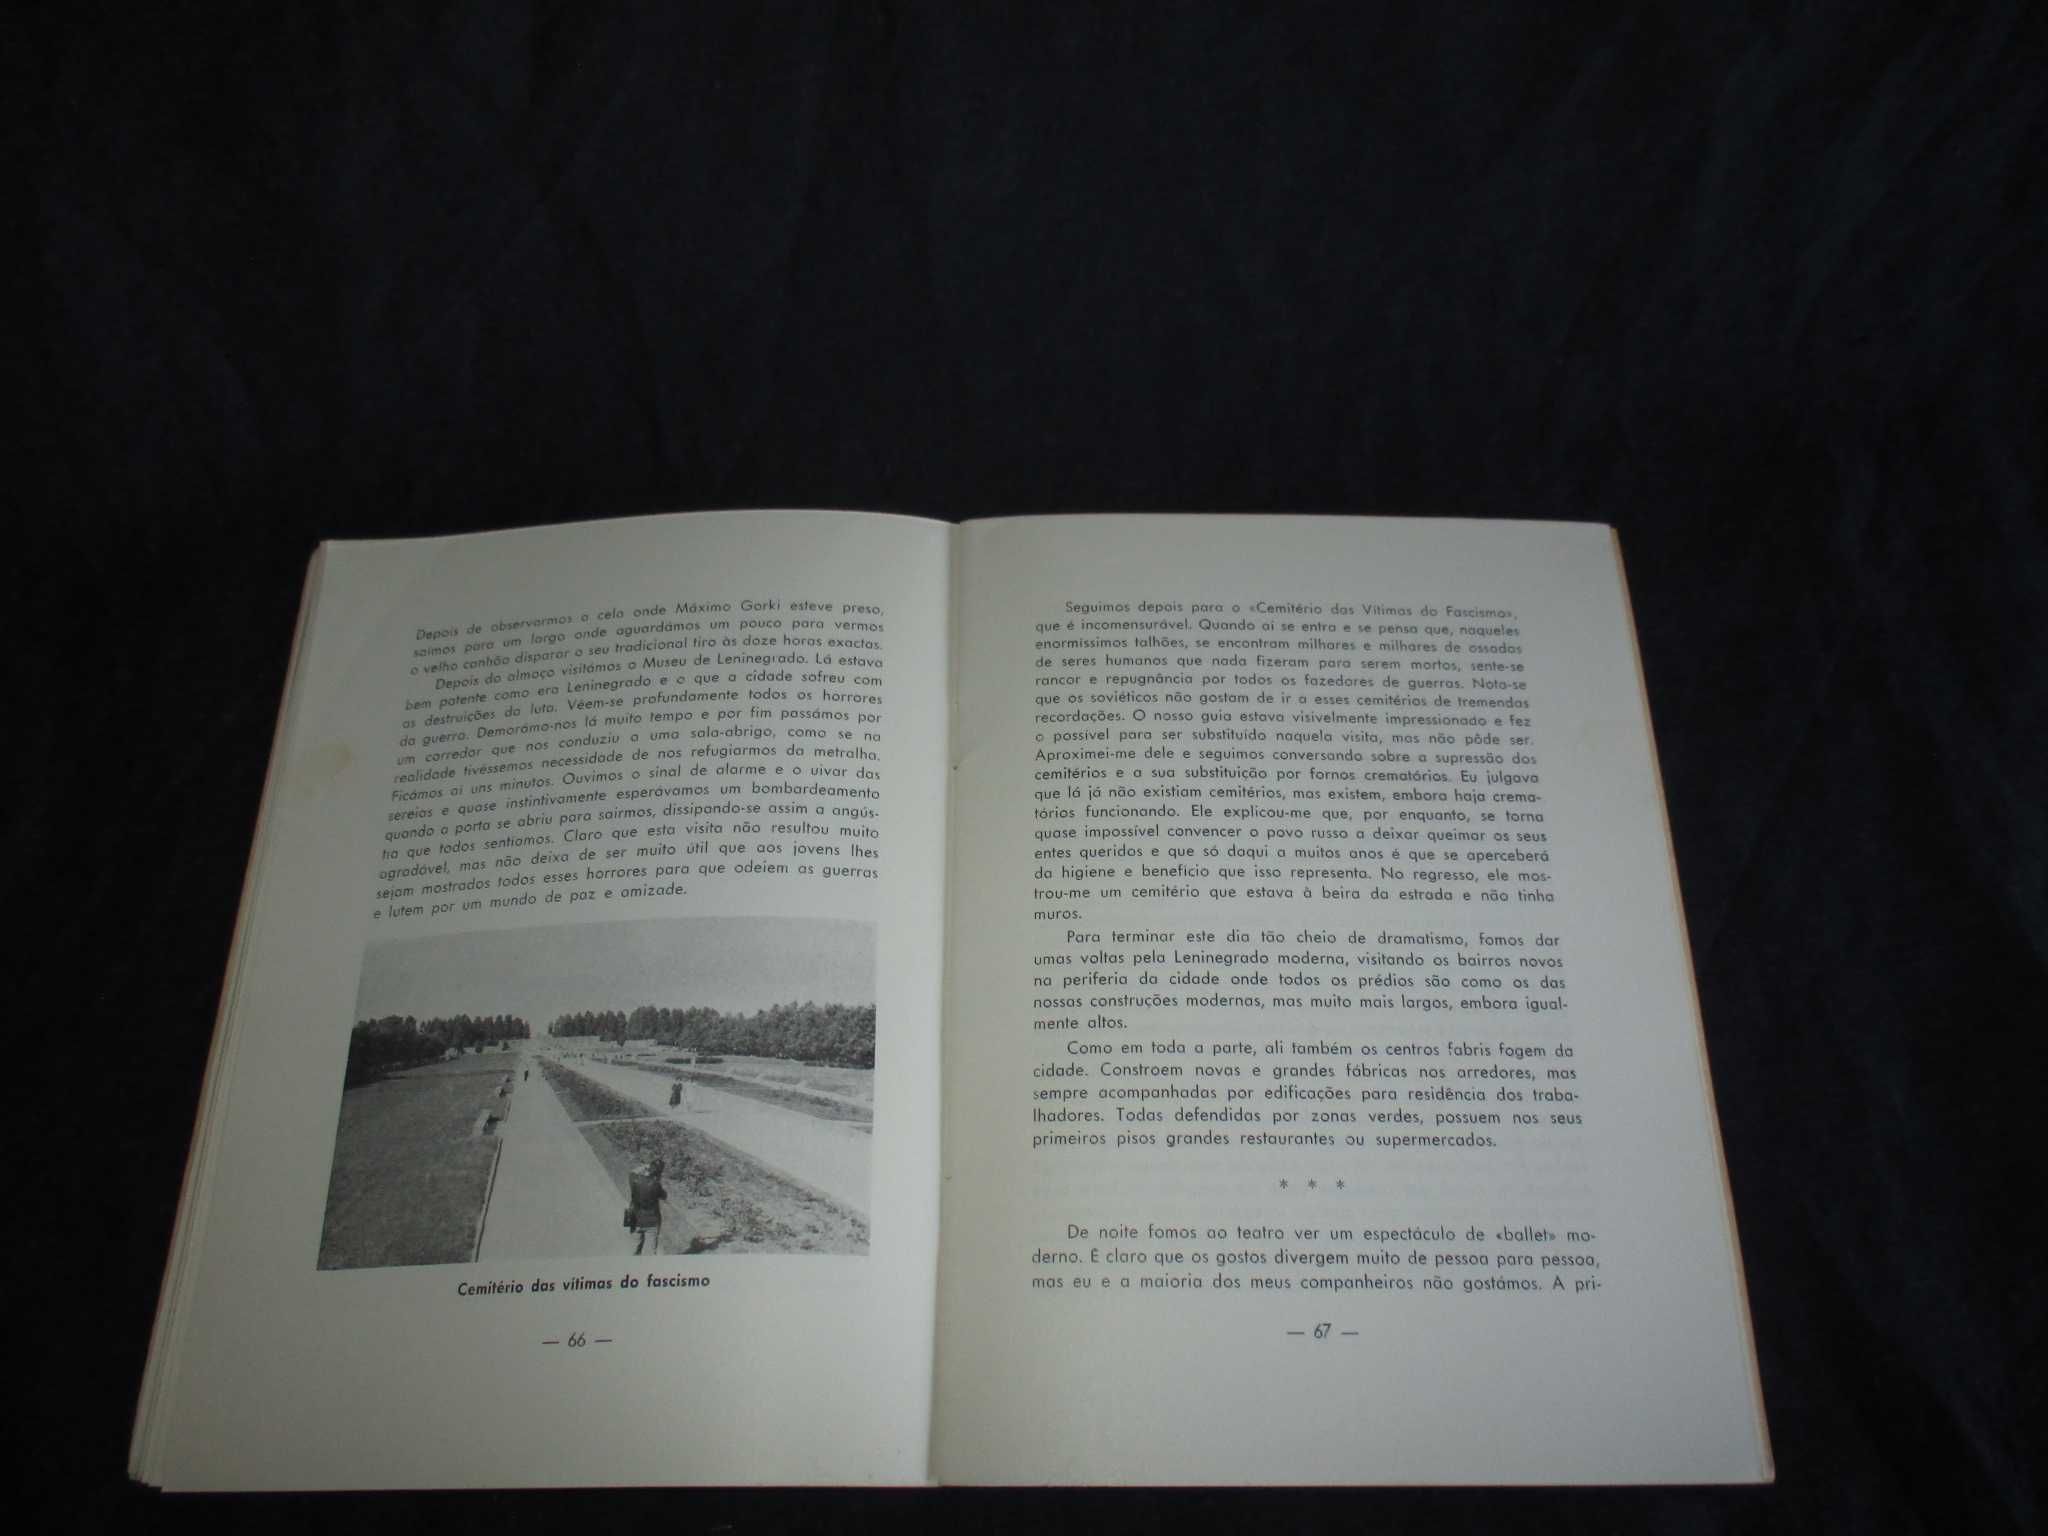 Livro A Minha Viagem à União Soviética Hortênsia Neves de Sousa